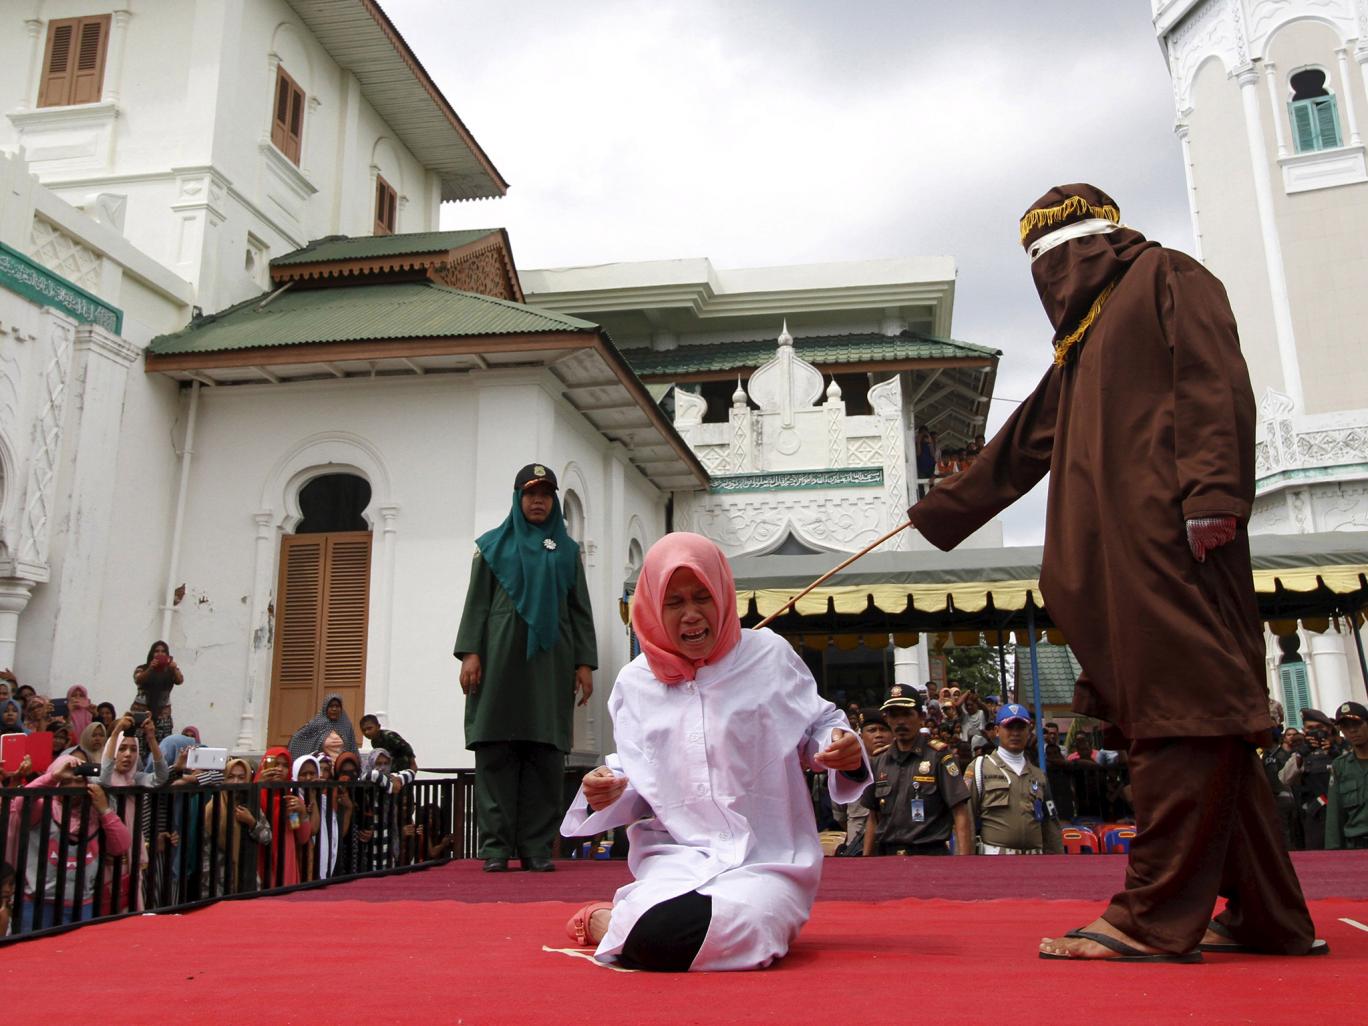 В Индонезии ввели уголовную ответственность за секс вне брака